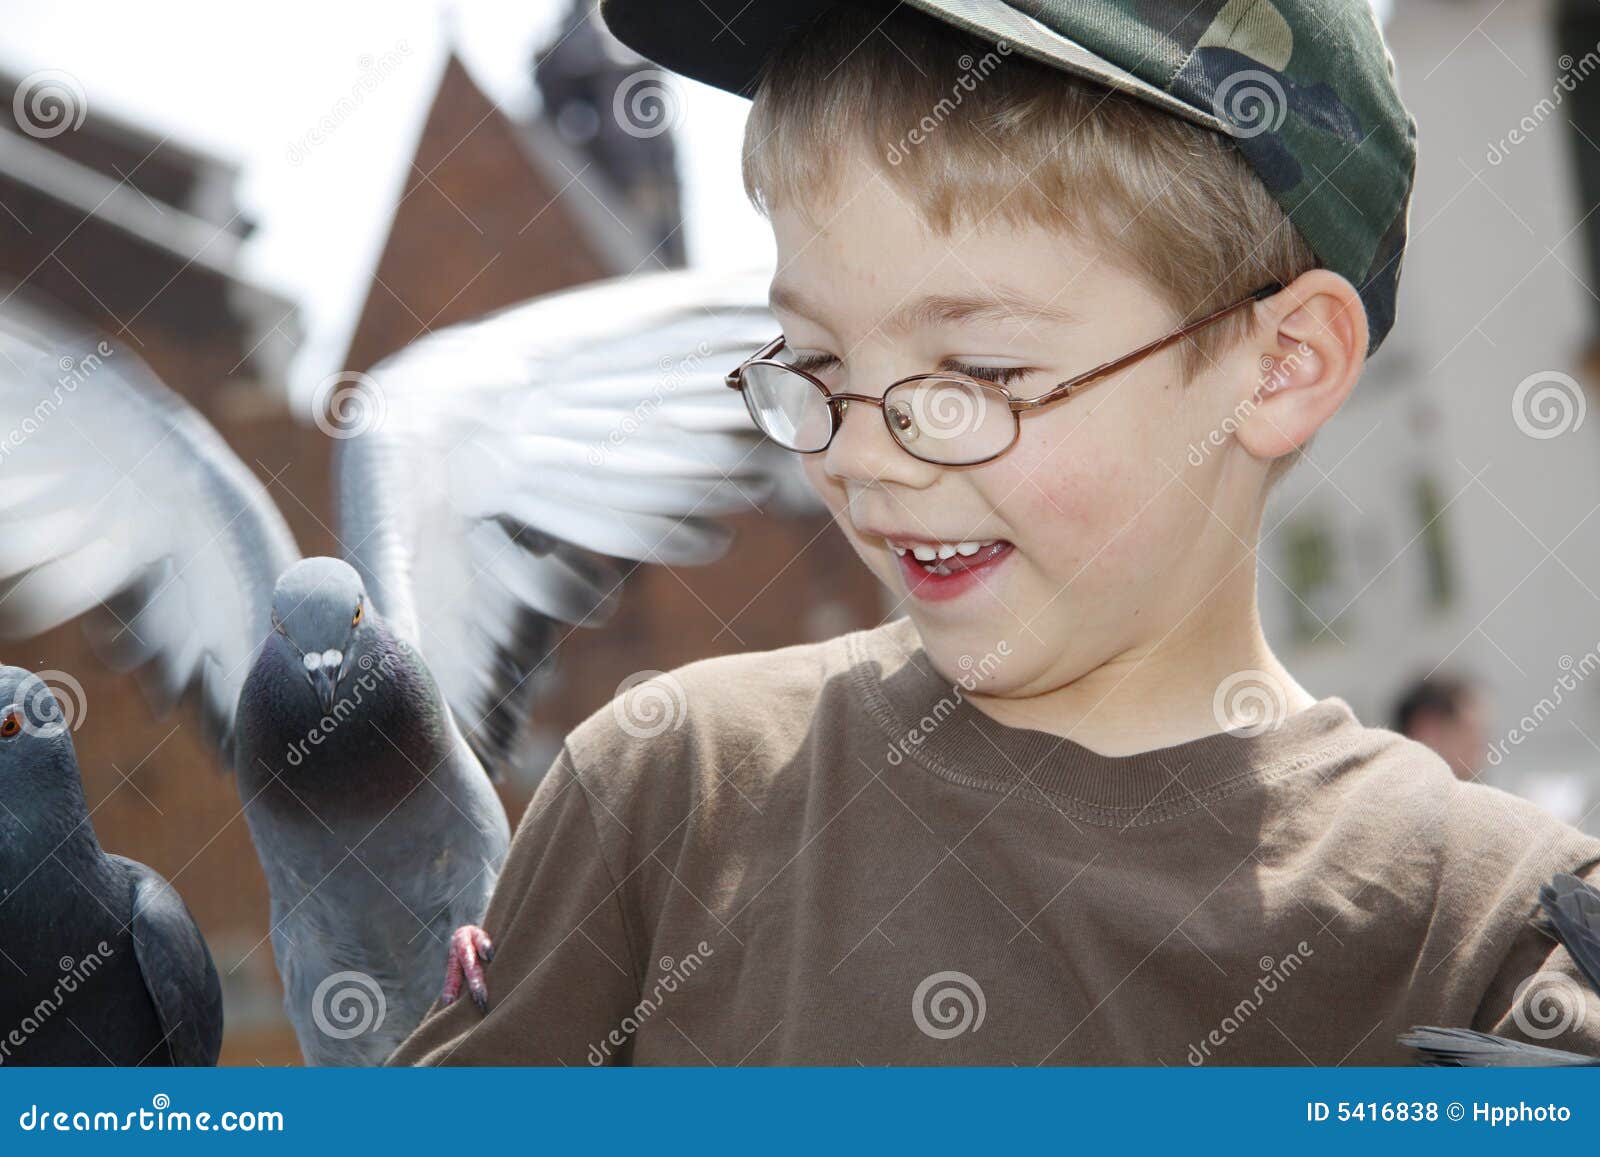 Мальчик и птица оскар. Мальчик и птичка. Фото мальчика и птицы. Мальчик с птичкой на голове. Моменты из мальчик птица.